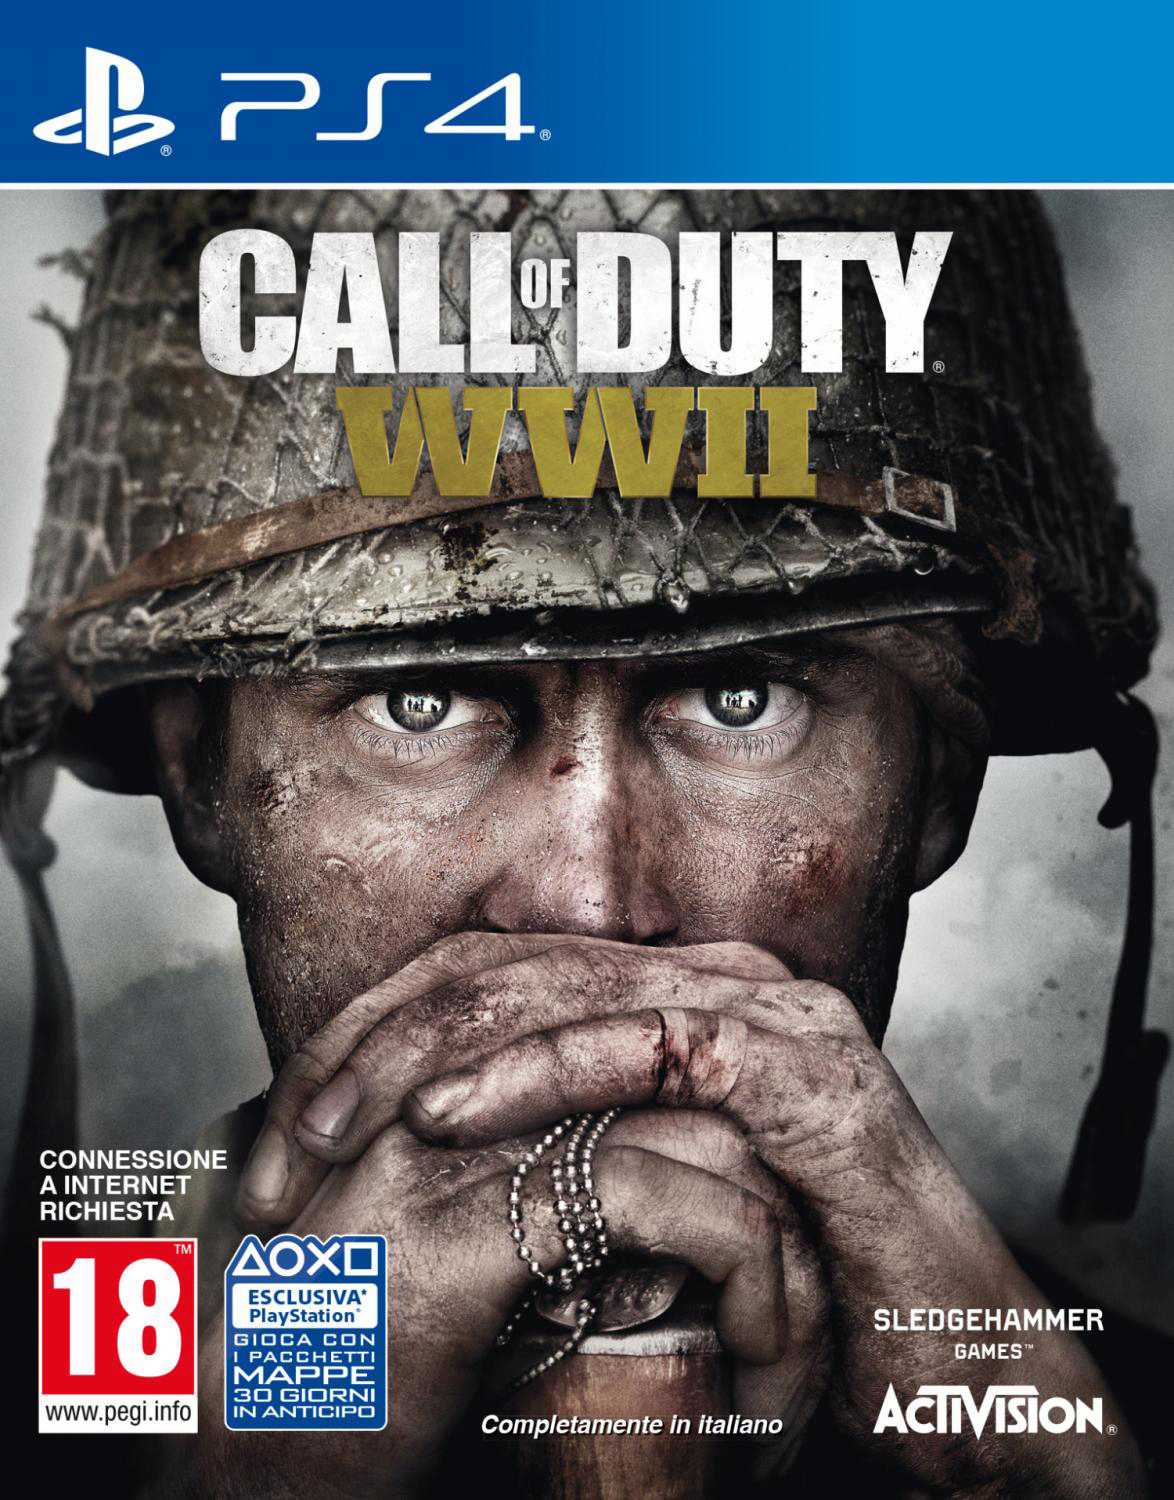 ACTIVISION 88108 Videogioco Call of Duty : World War II 18+ Videogioco PS4